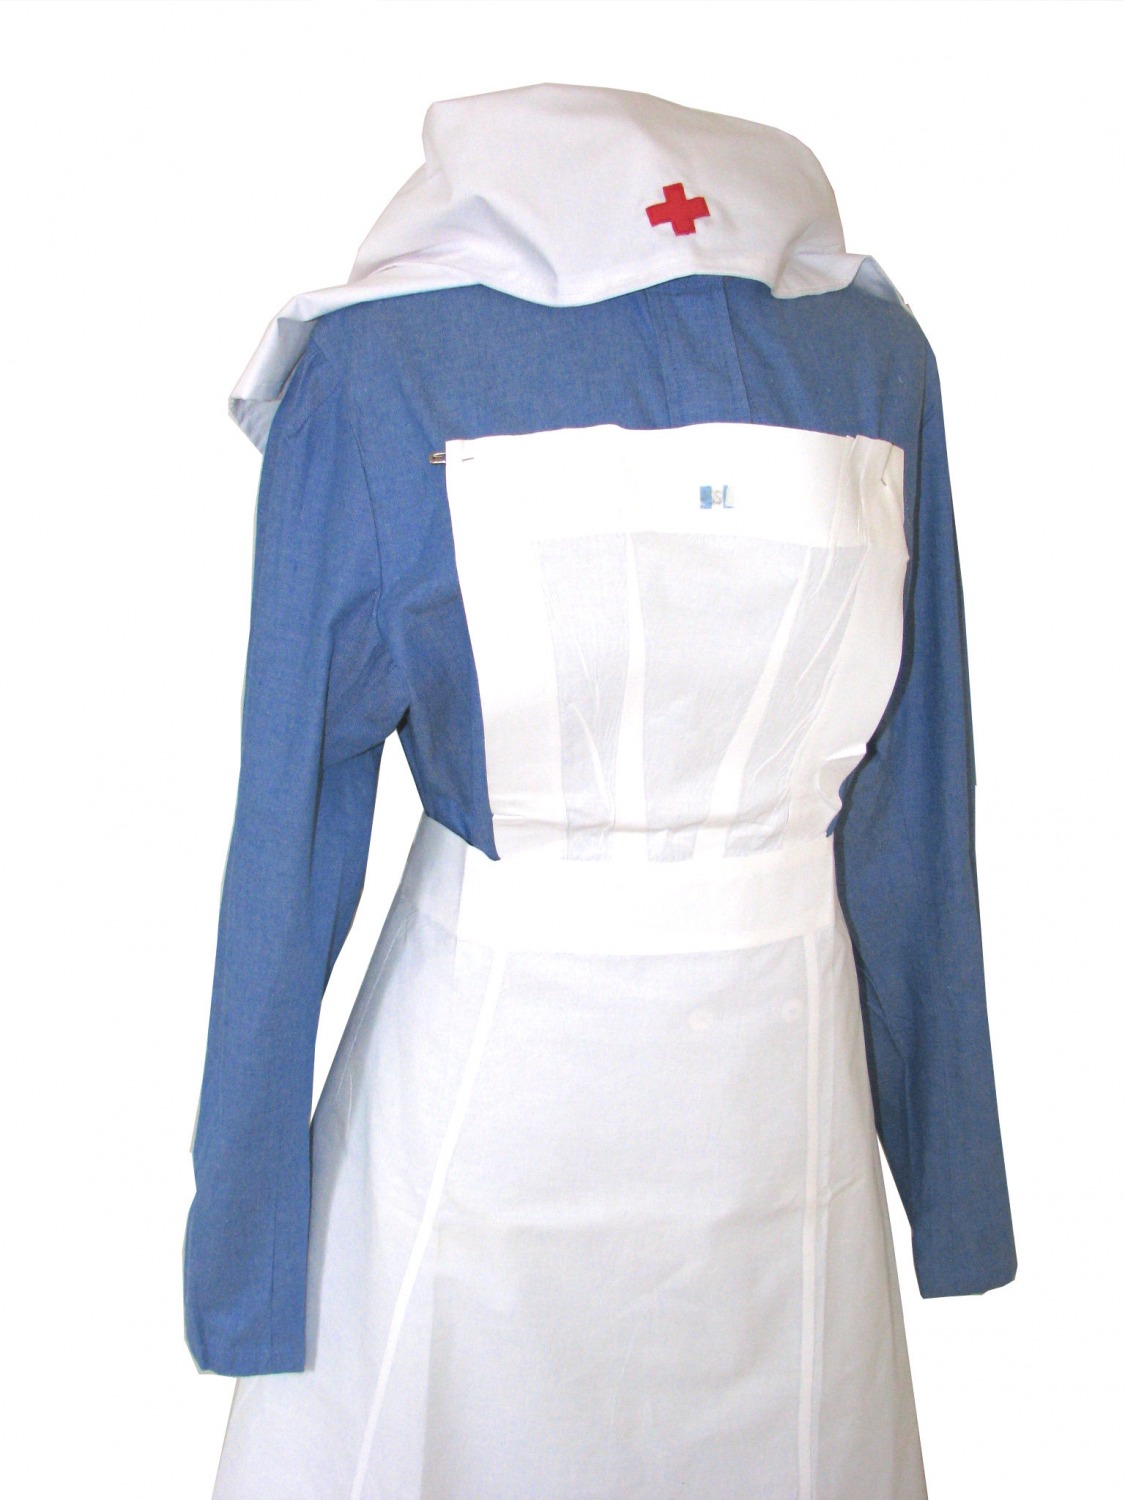 Ladies 1940s Vintage Wartime Nurse Uniform Size 18 - 20 Image